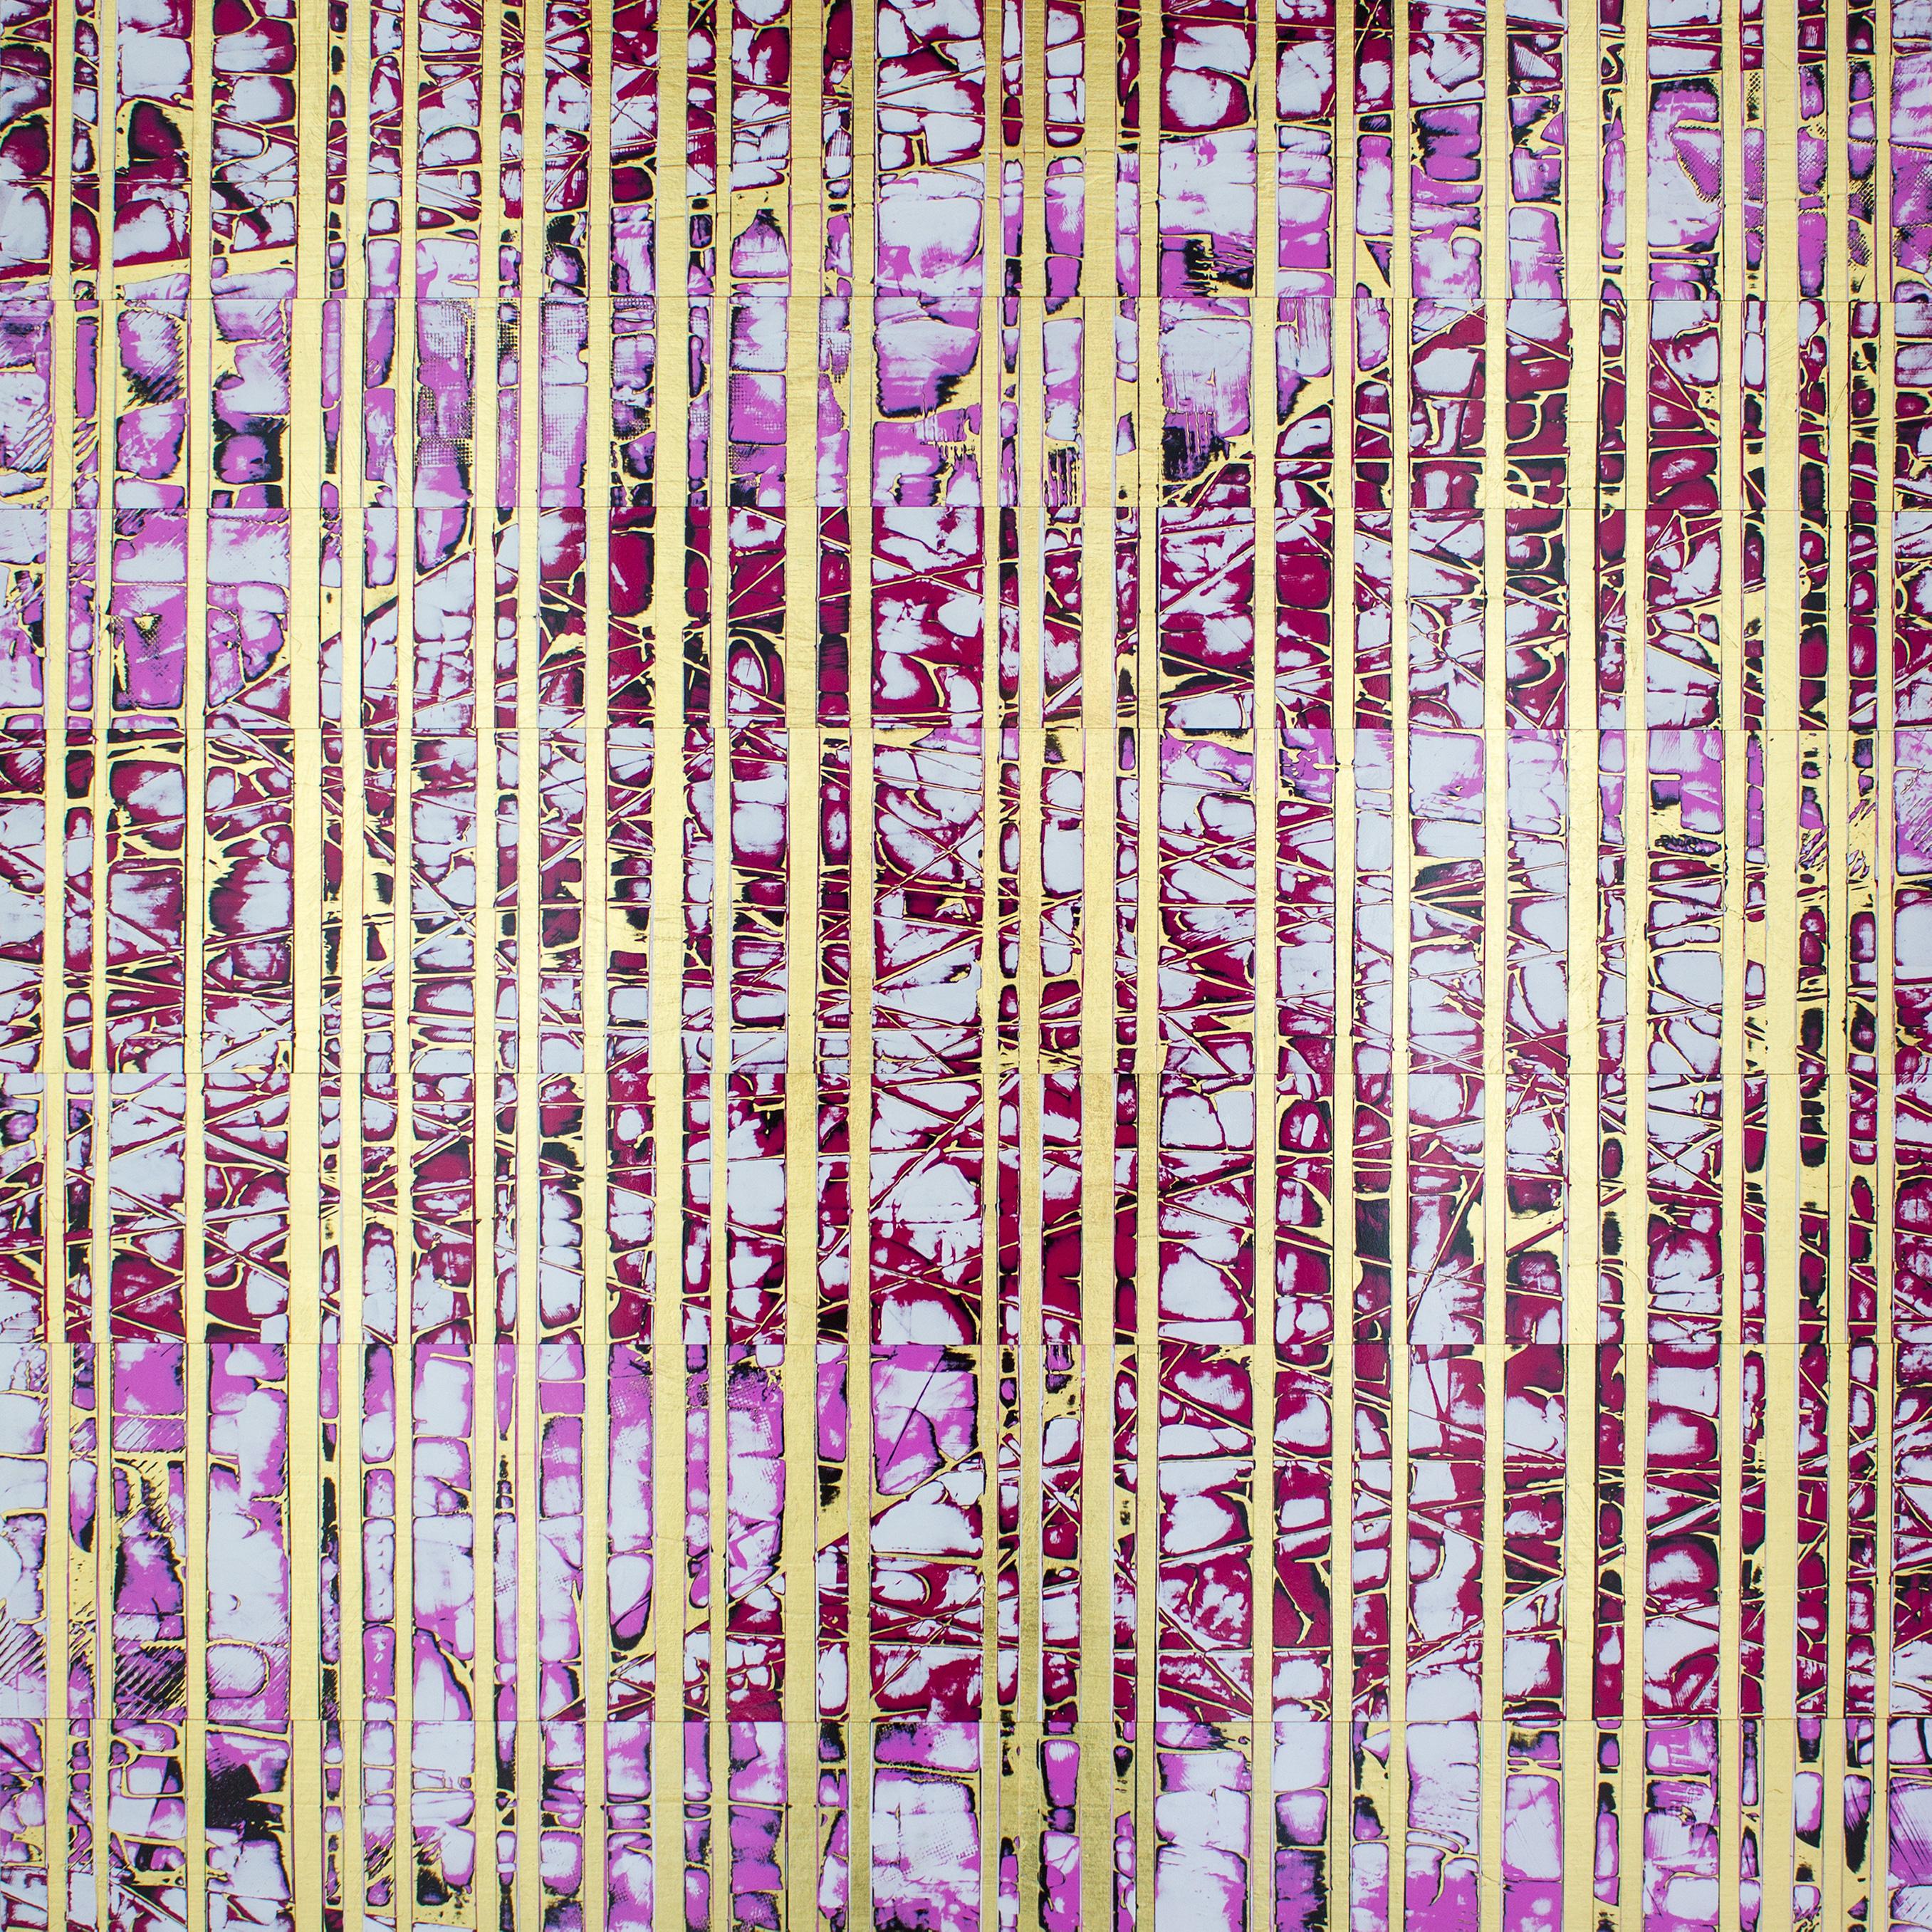 Metamorphose #11 / Sophie's Candyland, peinture abstraite, 2019